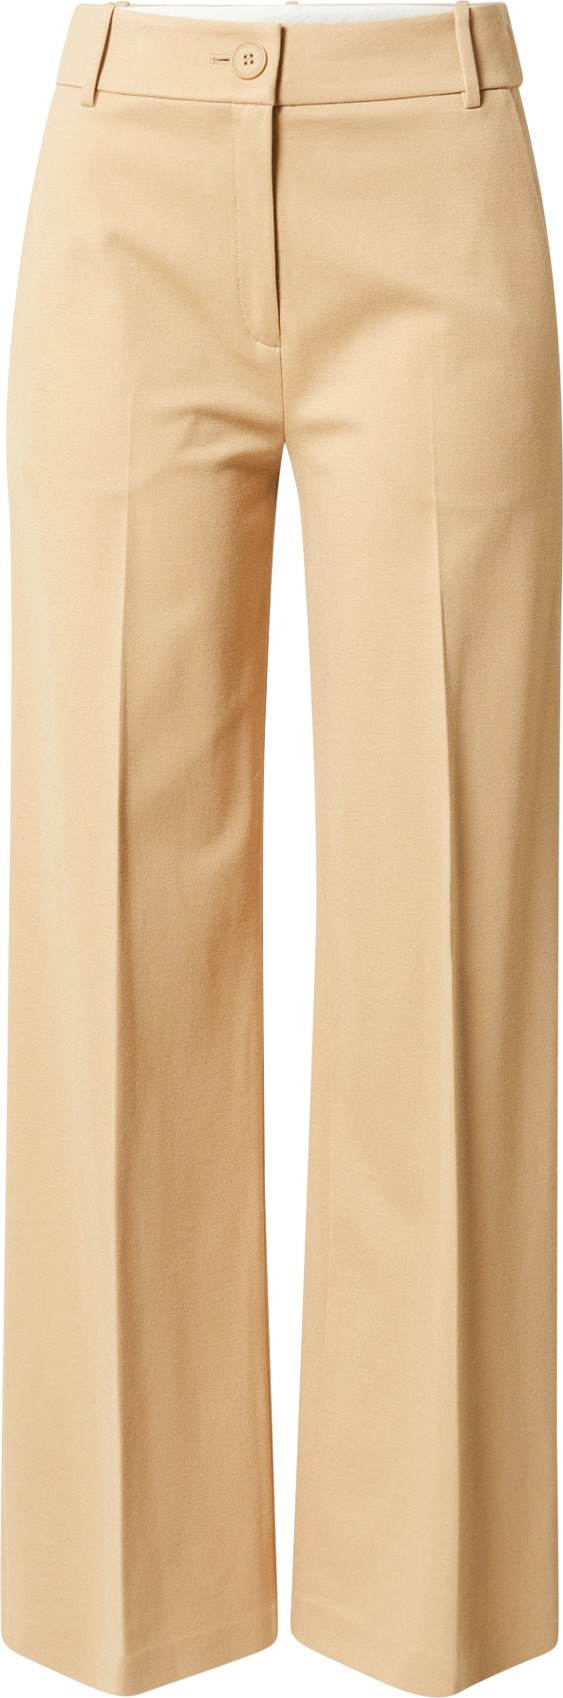 Esprit Collection Kalhoty s puky velbloudí